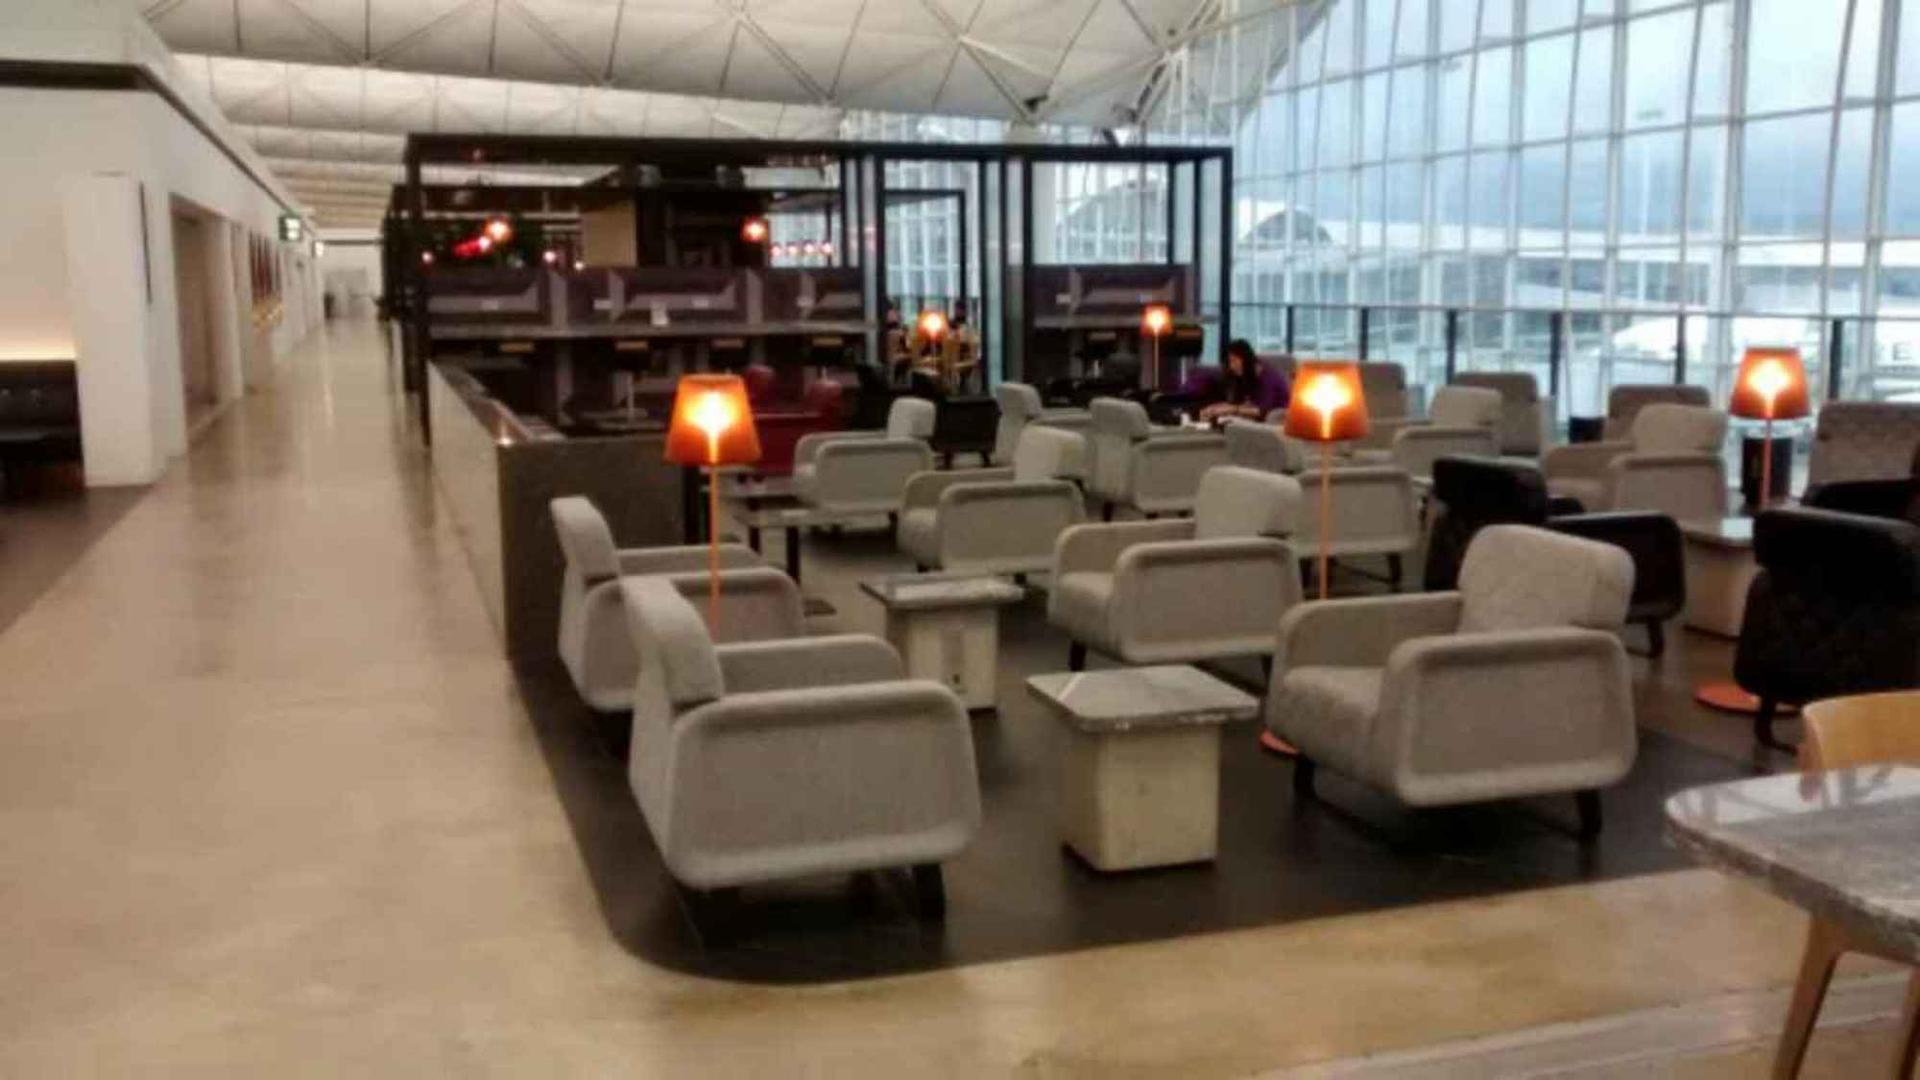 The Qantas Hong Kong Lounge image 30 of 99